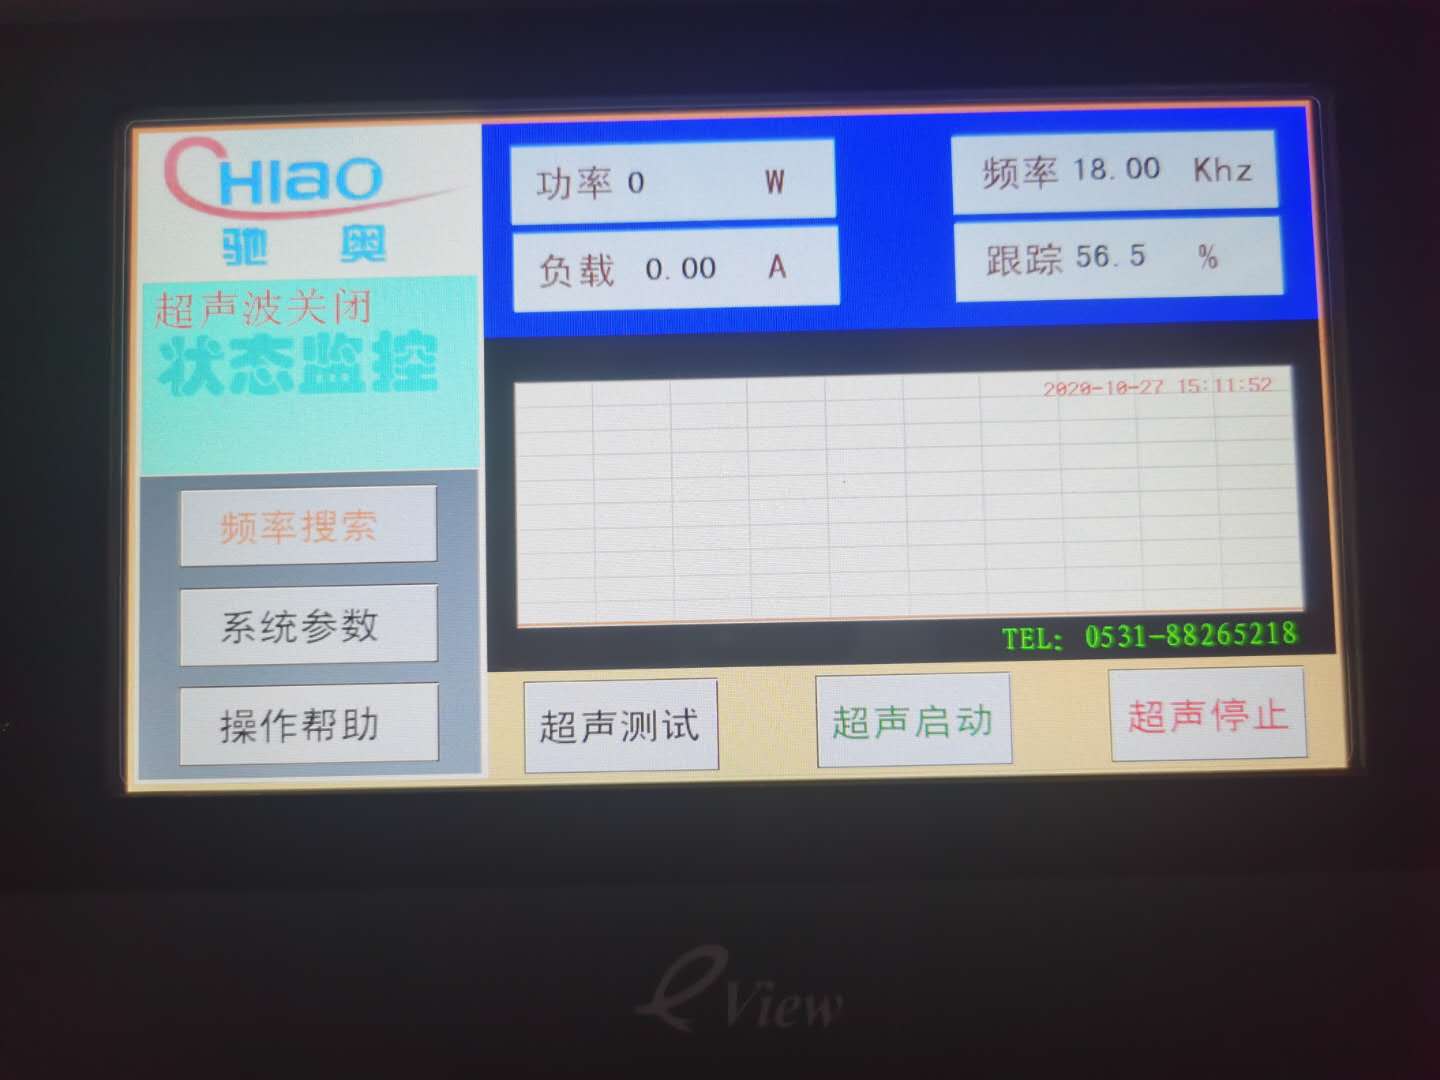 潍坊驰奥高频高配CO-200超声波时效设备